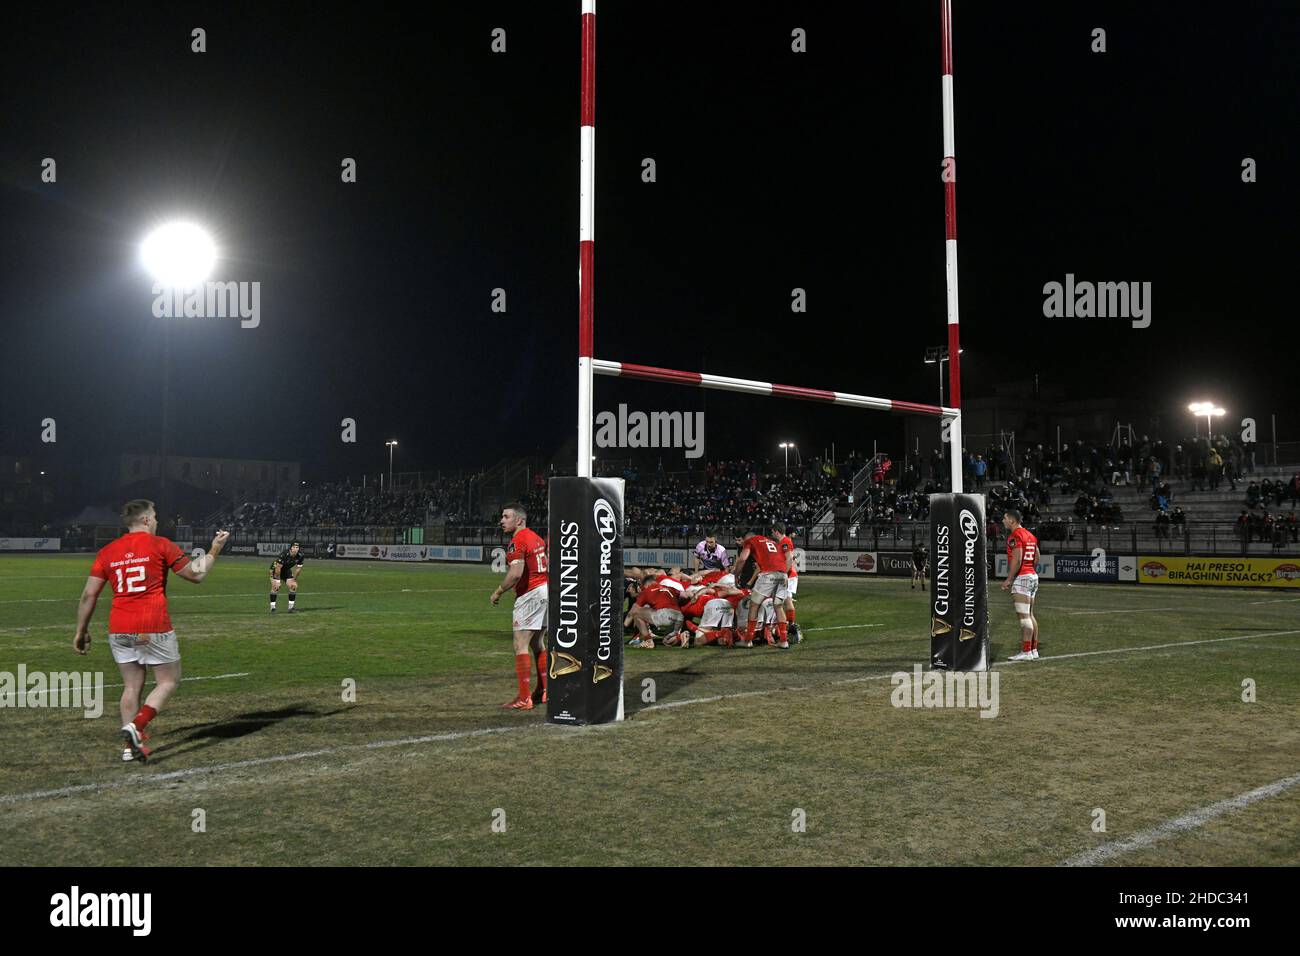 Puesto de rugby durante una noche Guinness Pro partido de rugby Zebre vs Munster Foto de stock